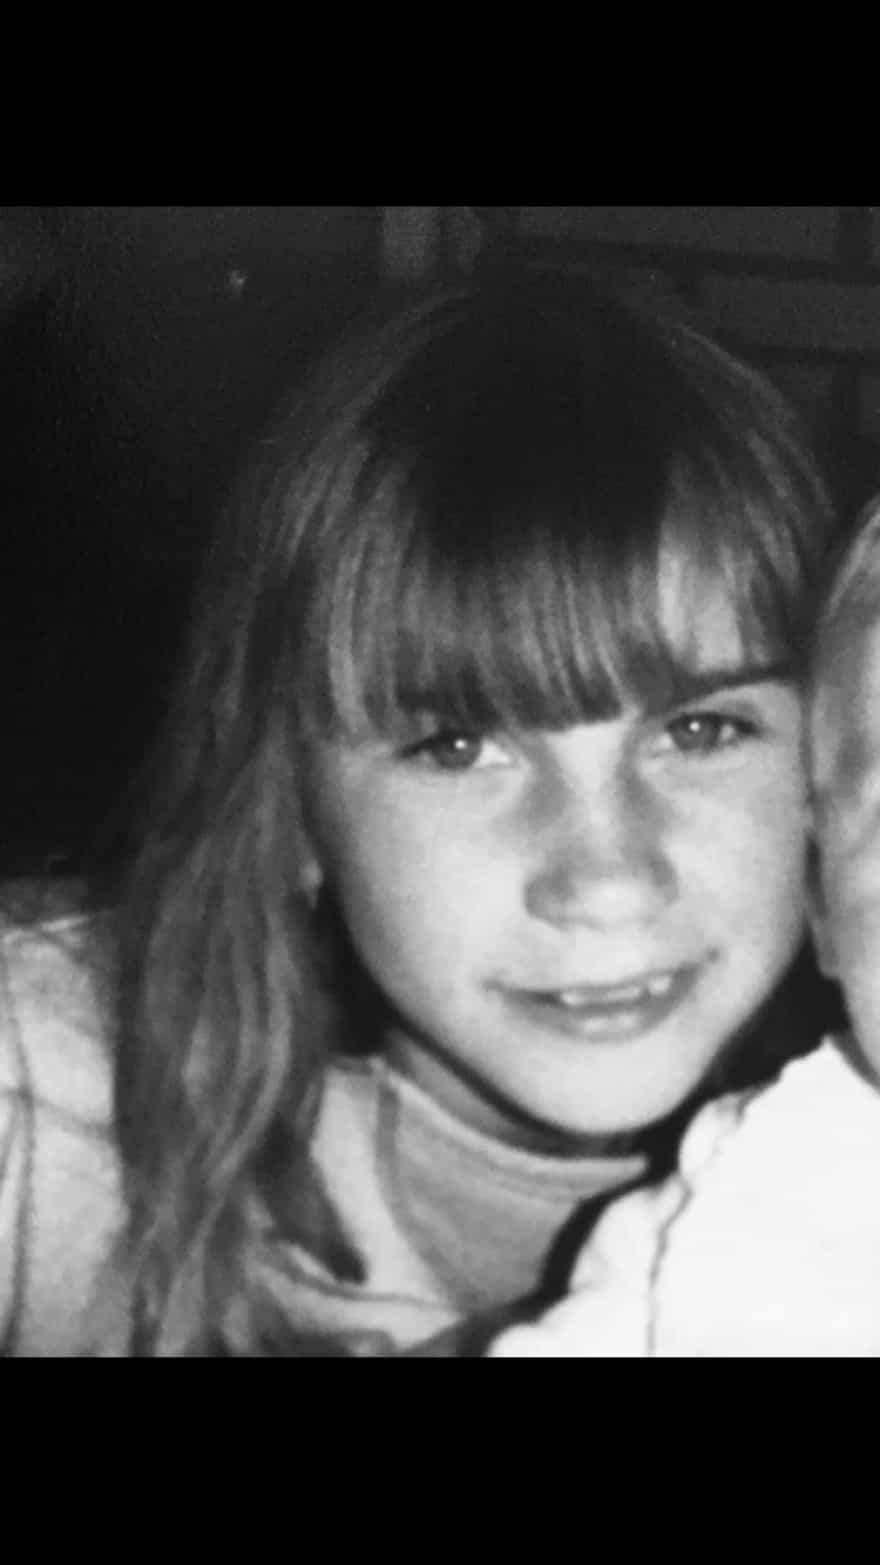 Hun blev kun 48 år: I 22 levede Tina med en livstruende sygdom, men nu er hun død - og meget savnet | jv.dk